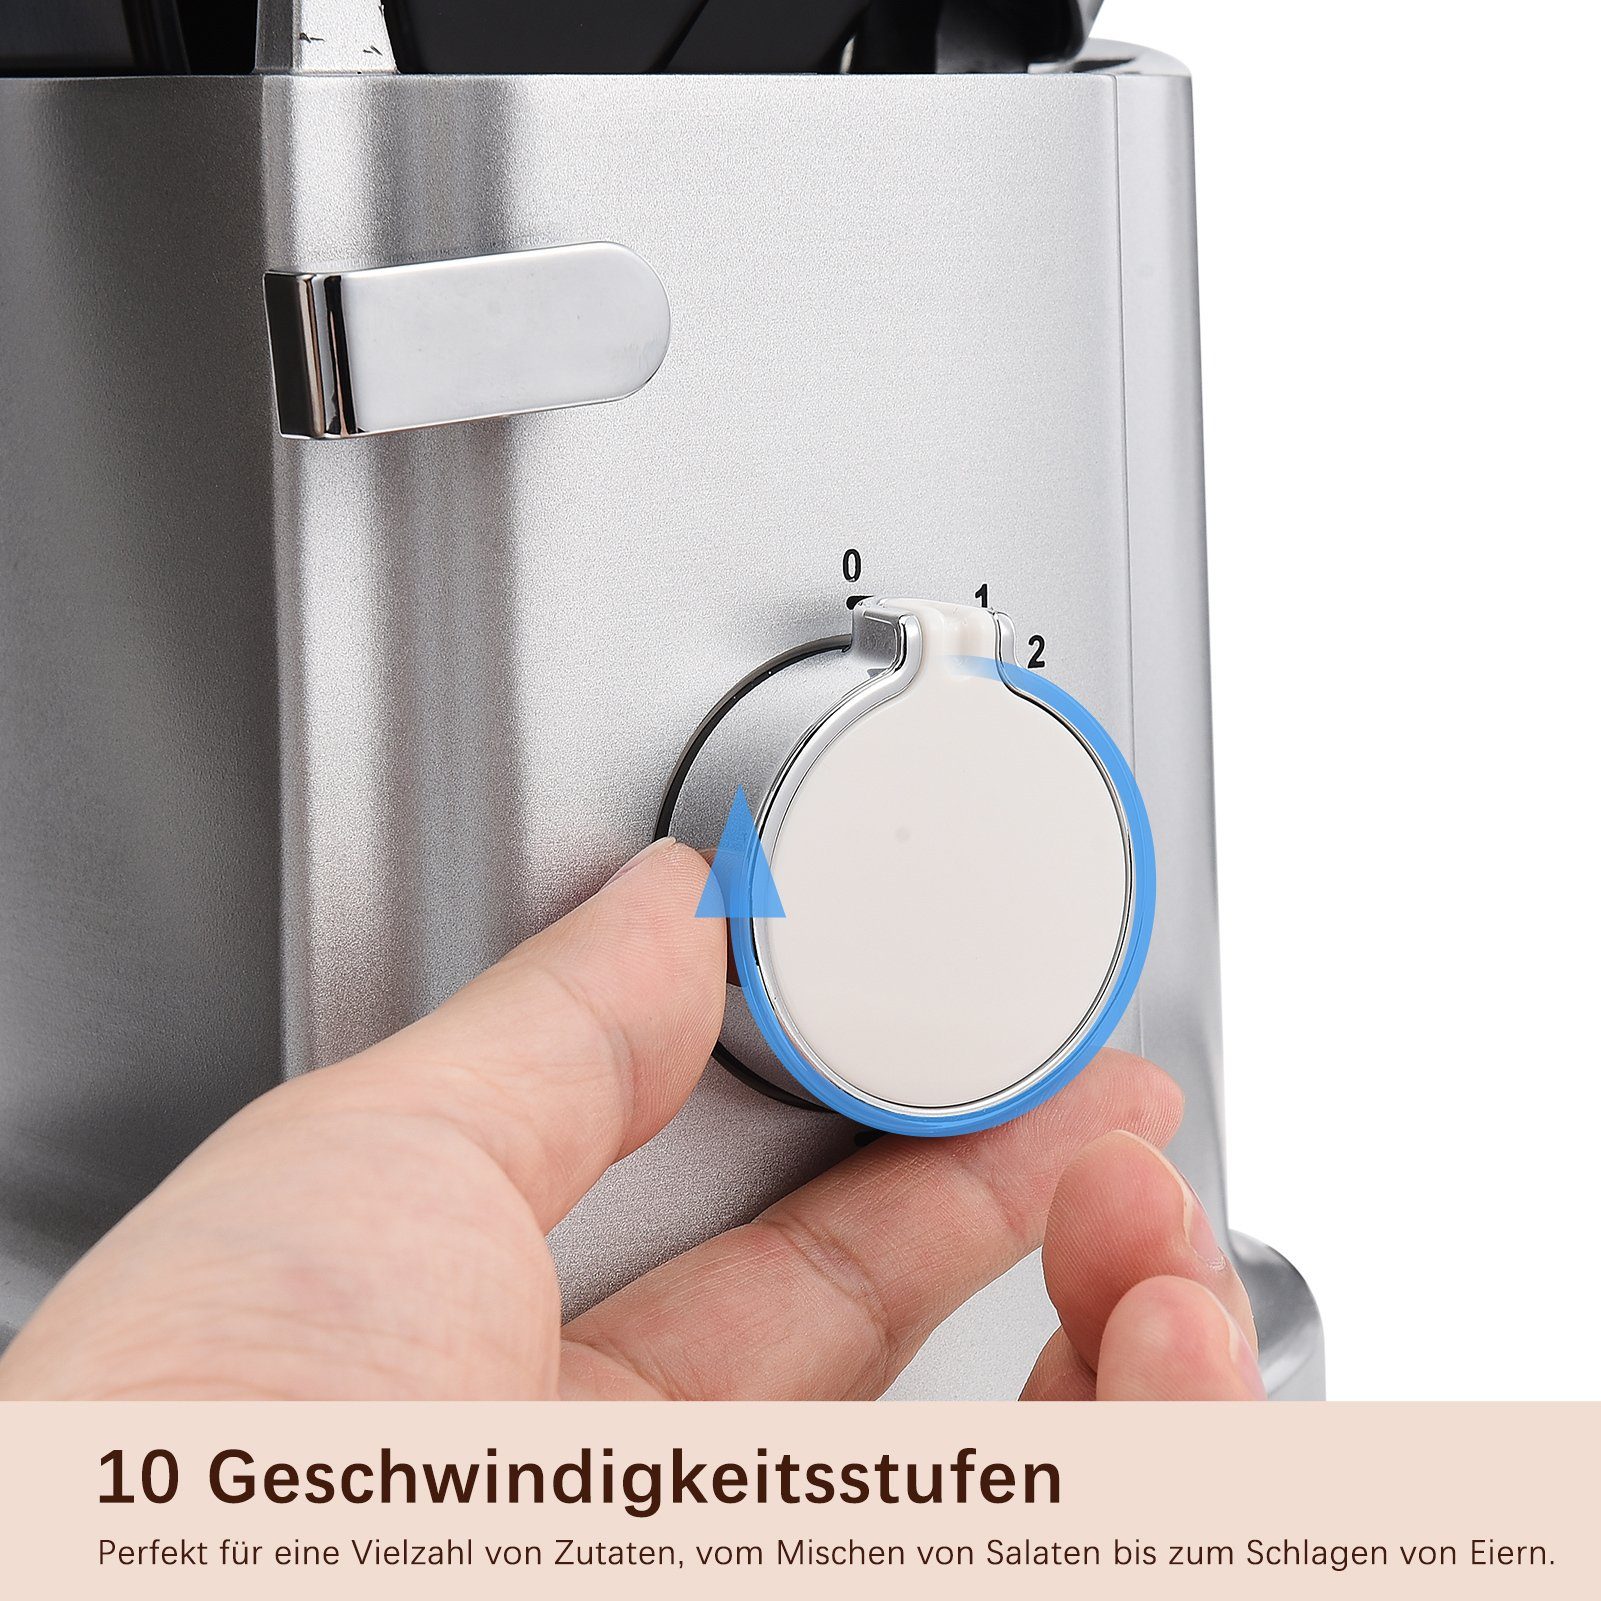 mit Multifunktional Kochfunktion Silber FUROKOY Haushaltsgeräte Kleine Maschine Küchenmaschine Mixer Küchenmaschine